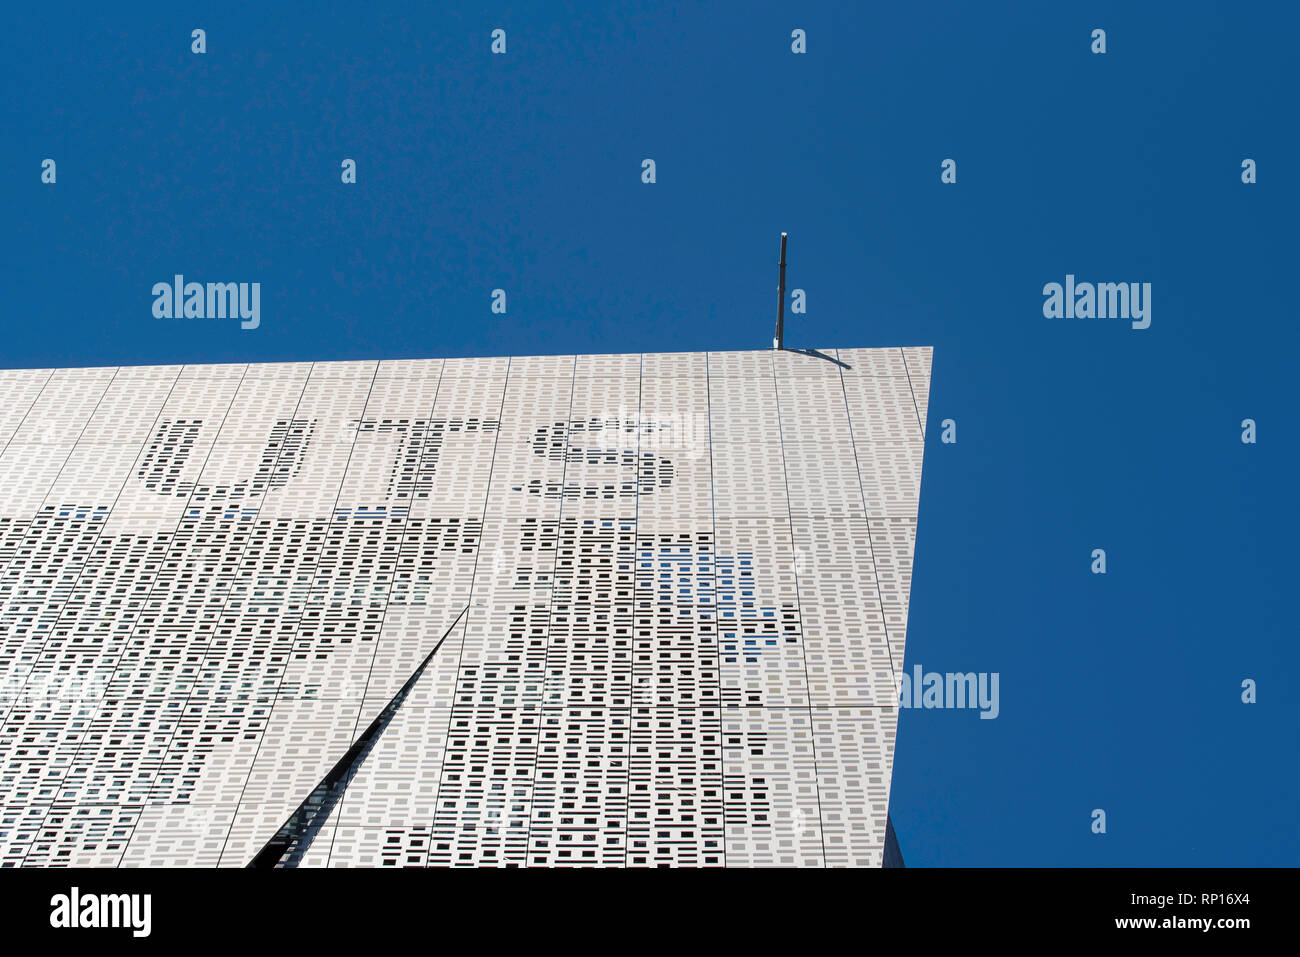 Universidad de Tecnología de Sydney el edificio 11, Facultad de Ingeniería y Construcción en Broadway está cubierto en una aleación binaria de pantalla 1's y ceros Foto de stock